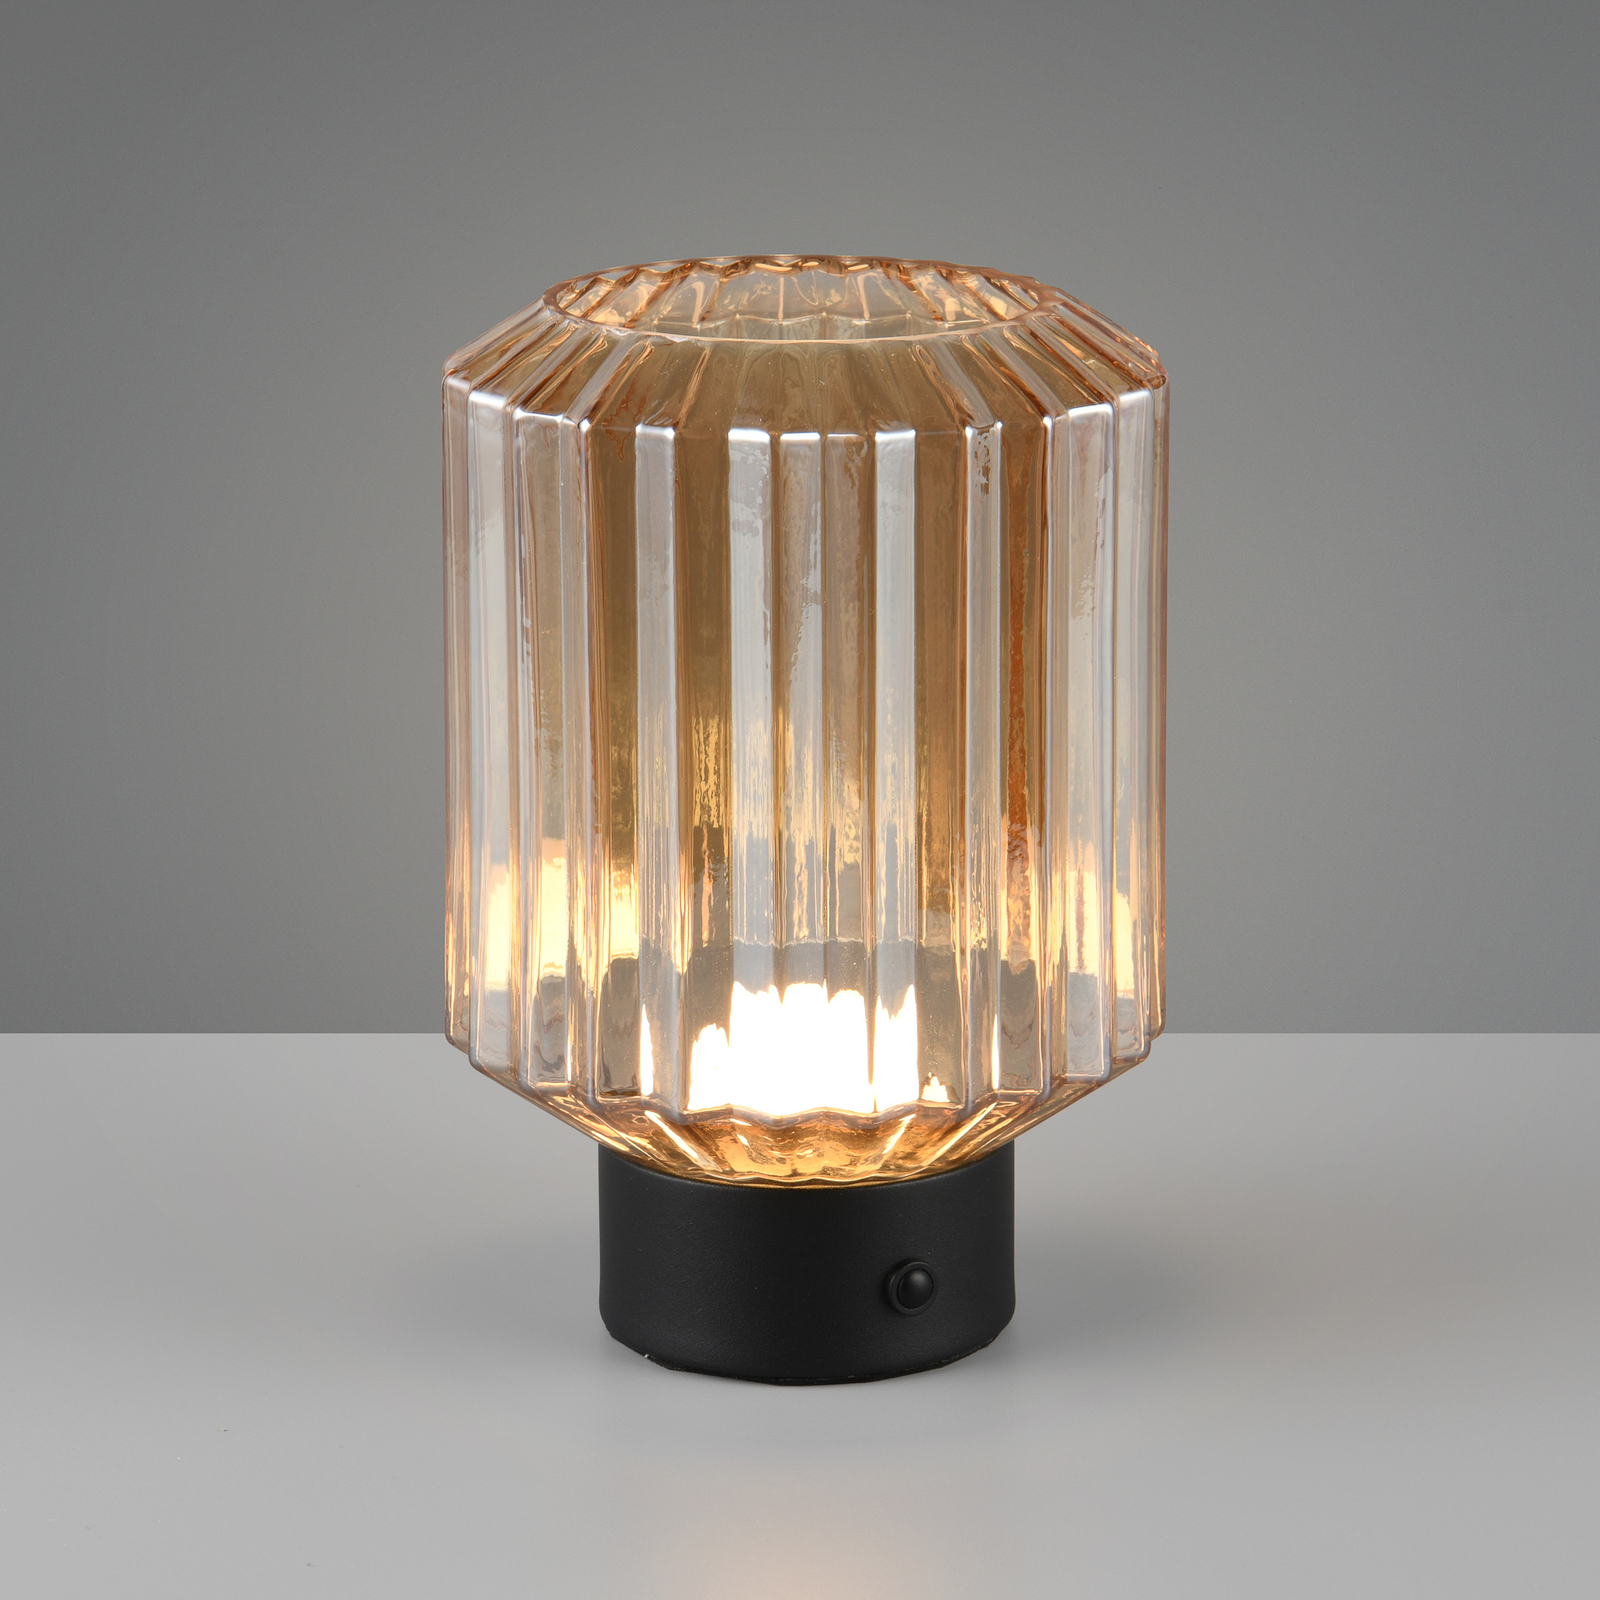 Lord LED oppladbar bordlampe, svart/amber, høyde 19,5 cm, glass